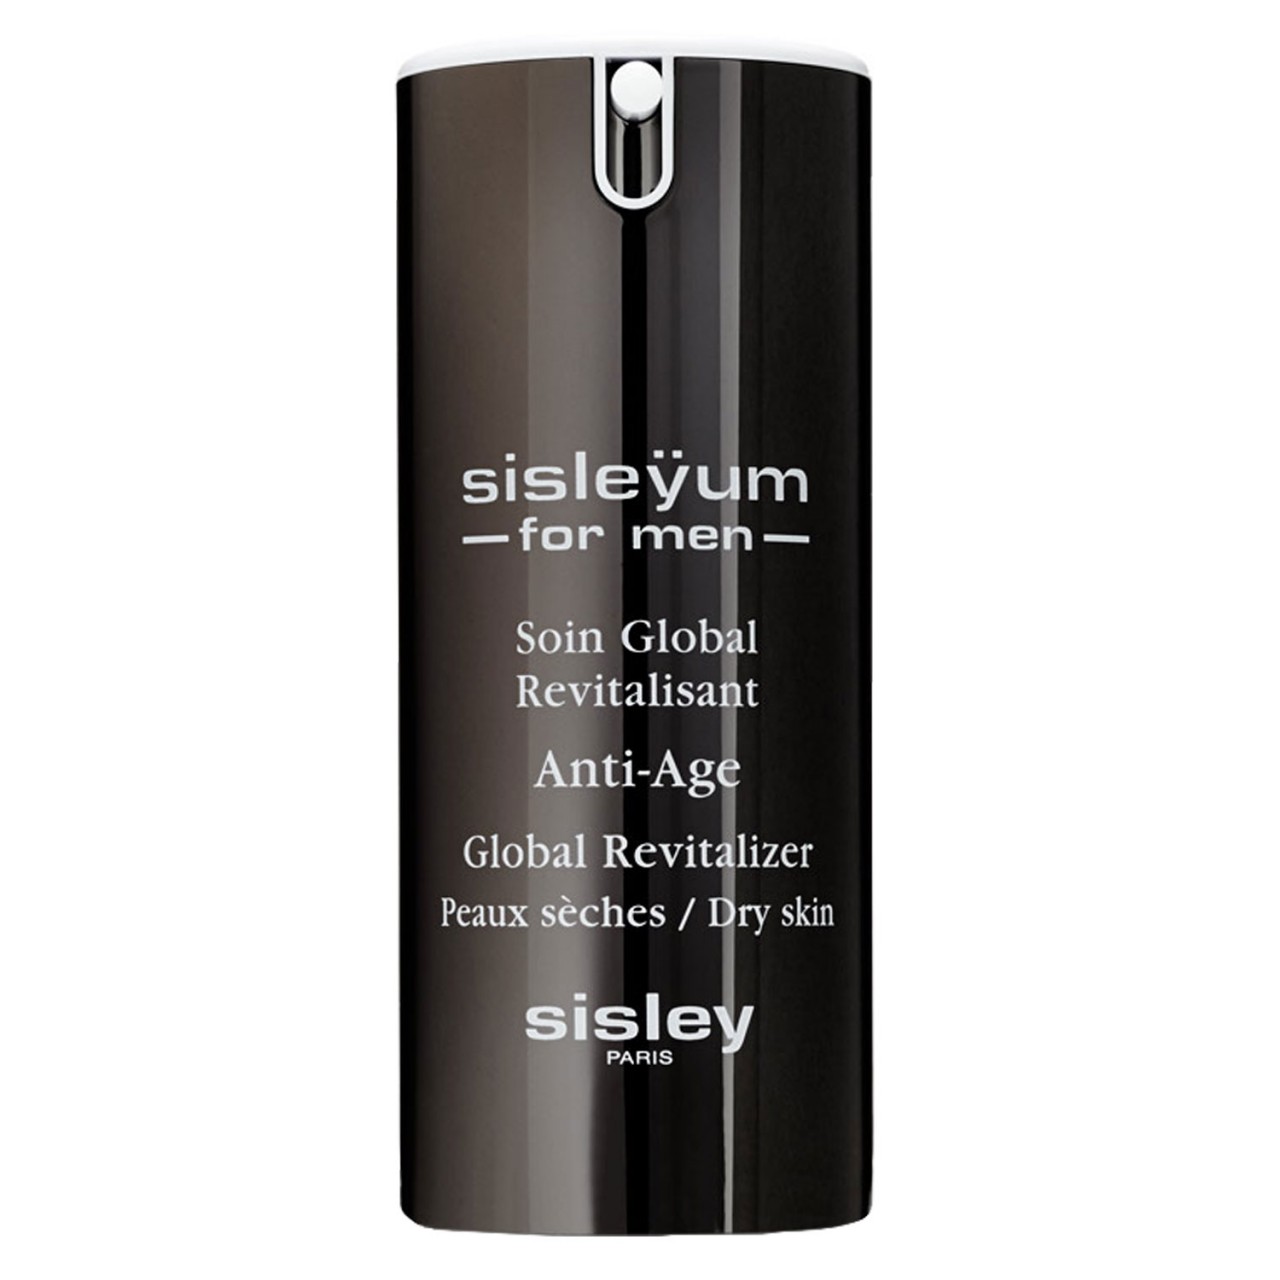 Sisleÿum - For Men Soin Global Revitalisant peaux sèches von SISLEY